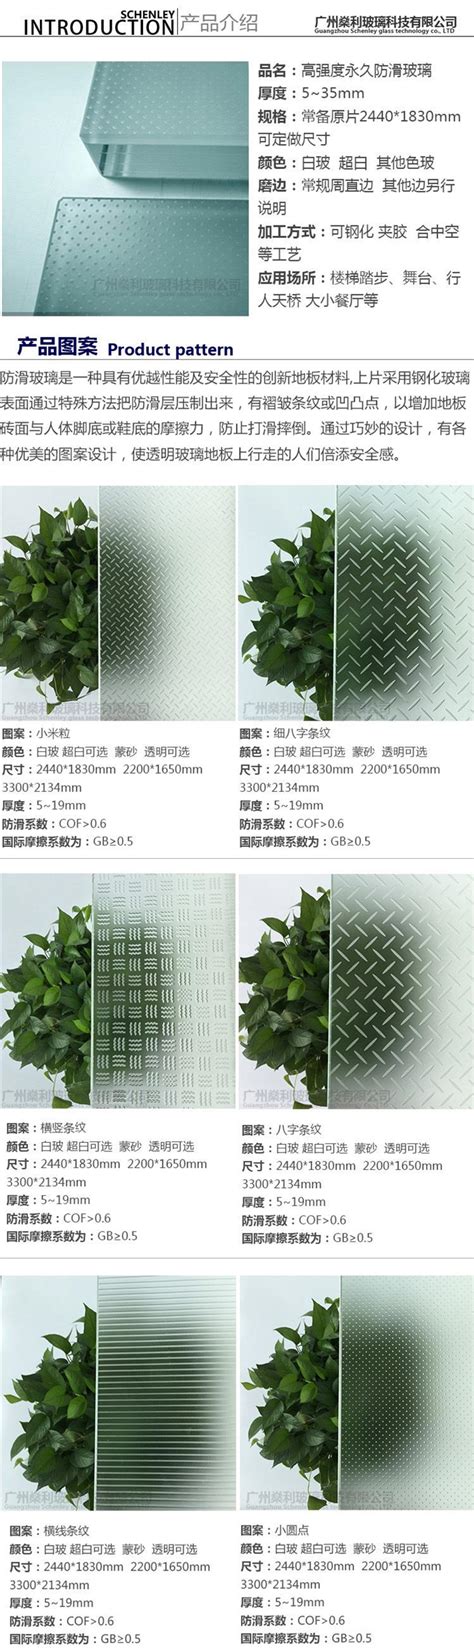 防滑玻璃夹层玻璃价格-广州燊利玻璃科技有限公司